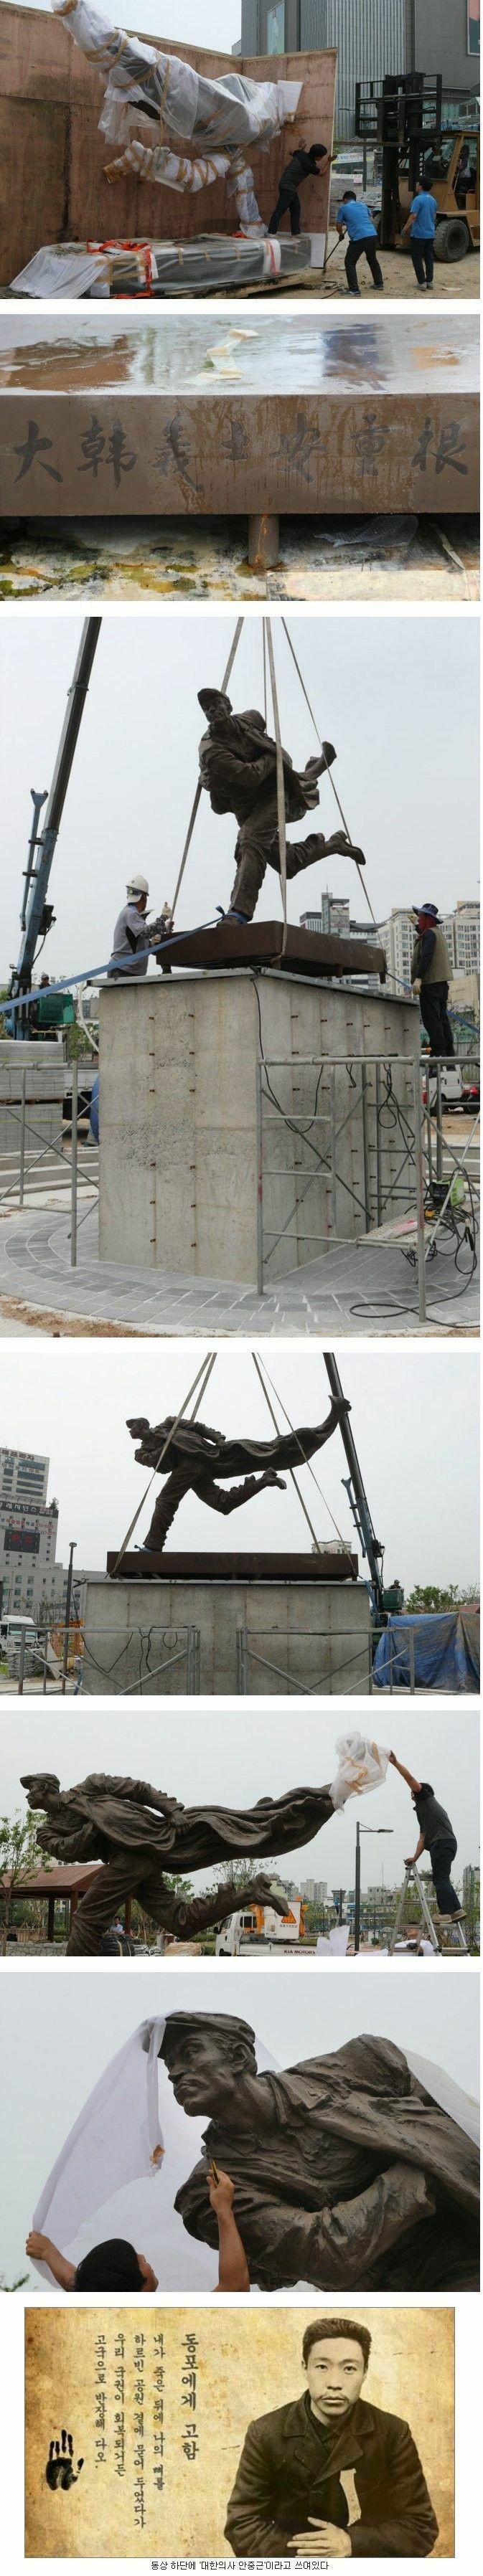 중국에서 제작 기증한 안중근 동상.jpg